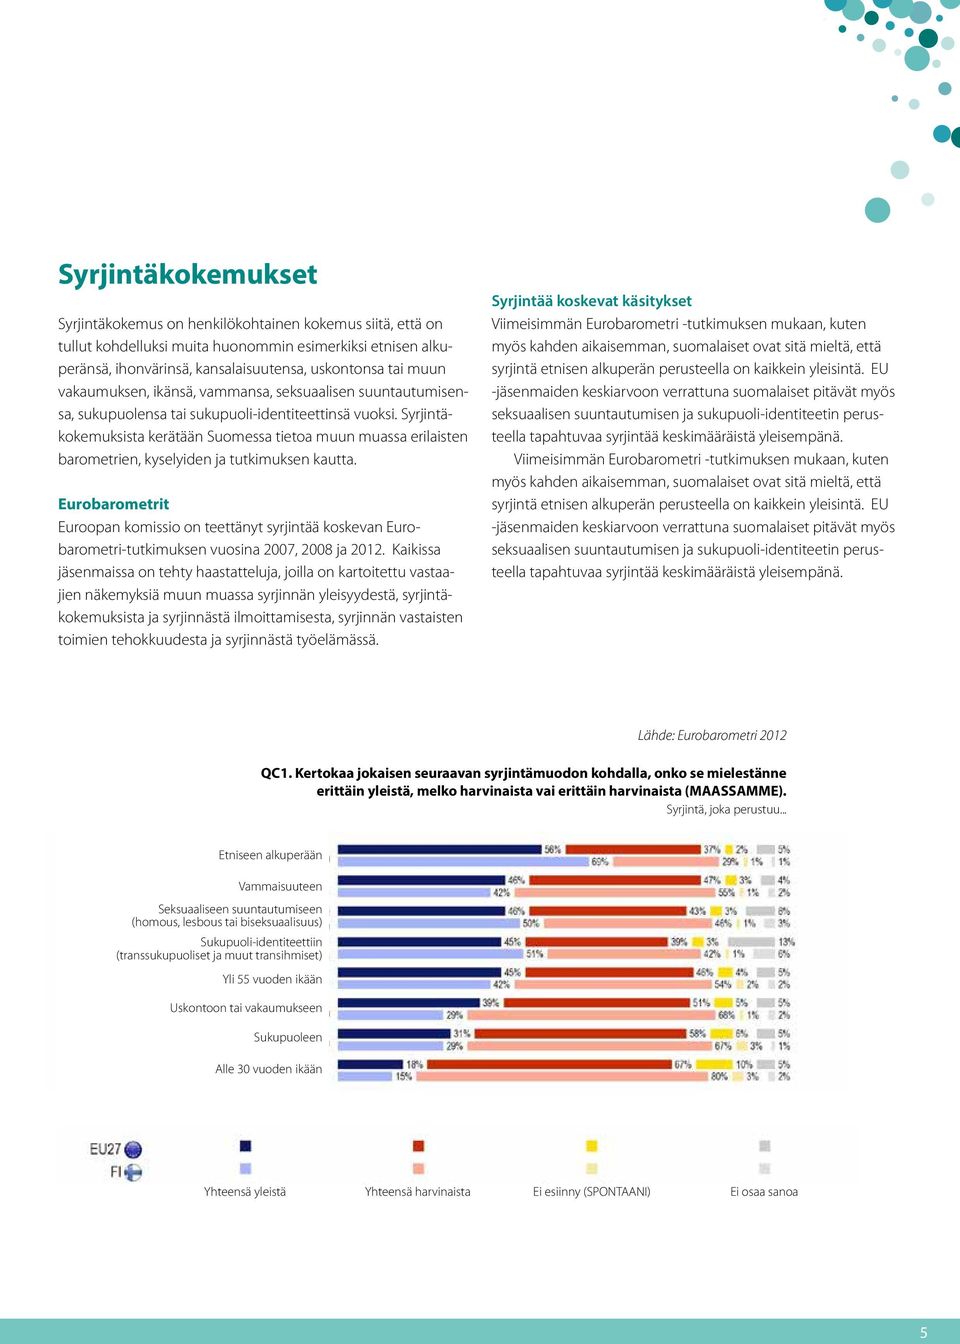 Syrjintäkokemuksista kerätään Suomessa tietoa muun muassa erilaisten barometrien, kyselyiden ja tutkimuksen kautta.